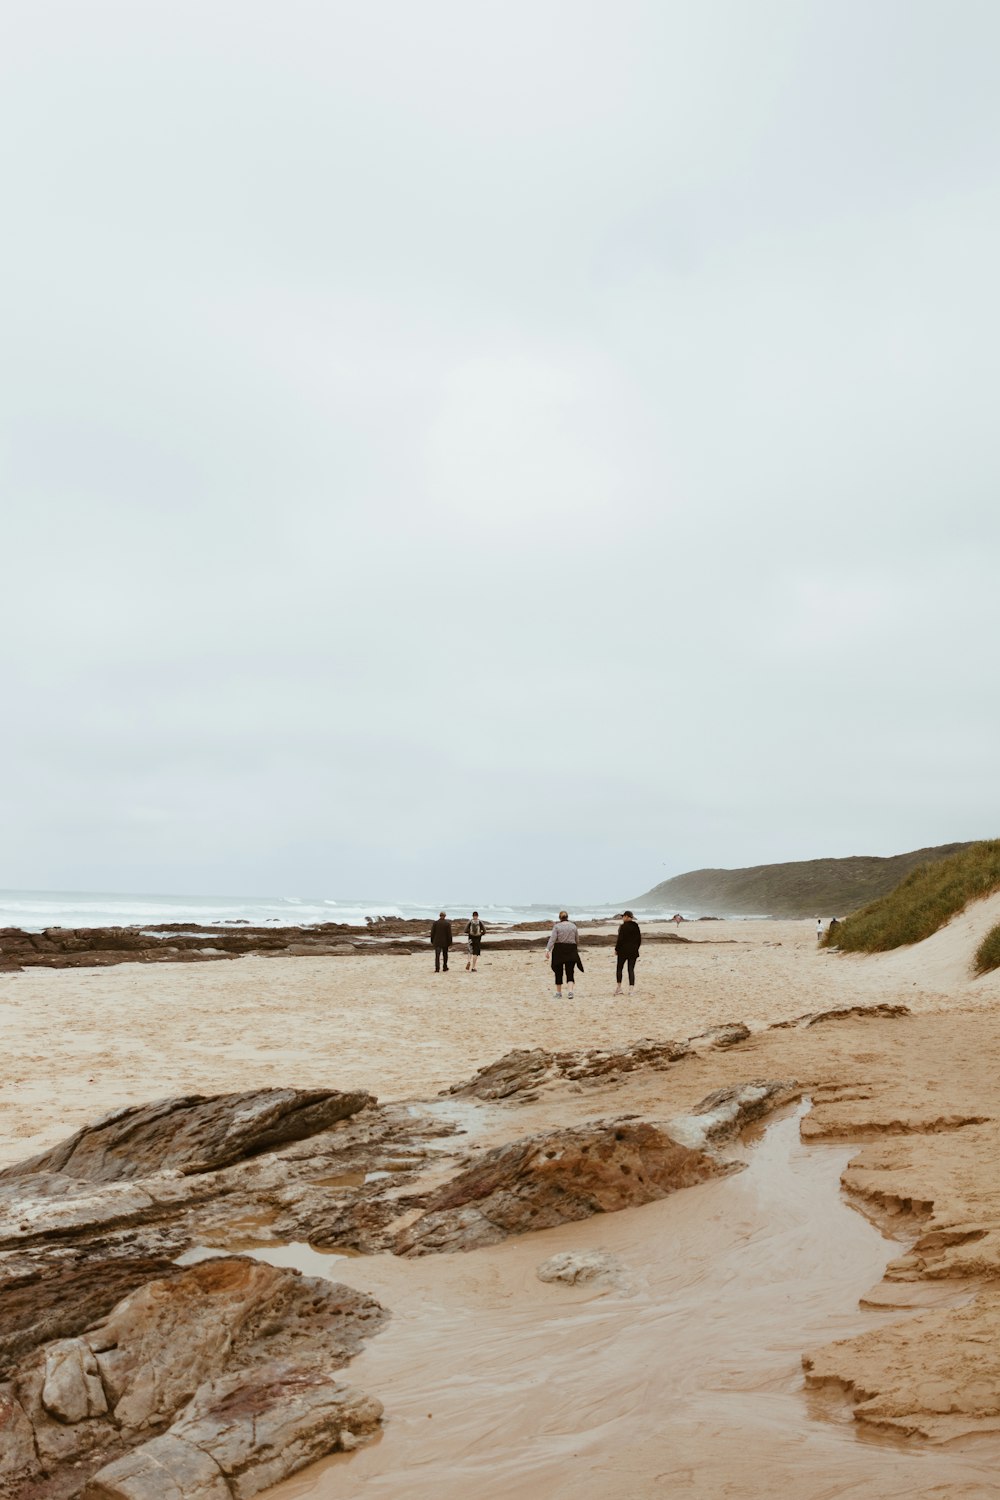 Gente caminando en la playa de arena marrón durante el día